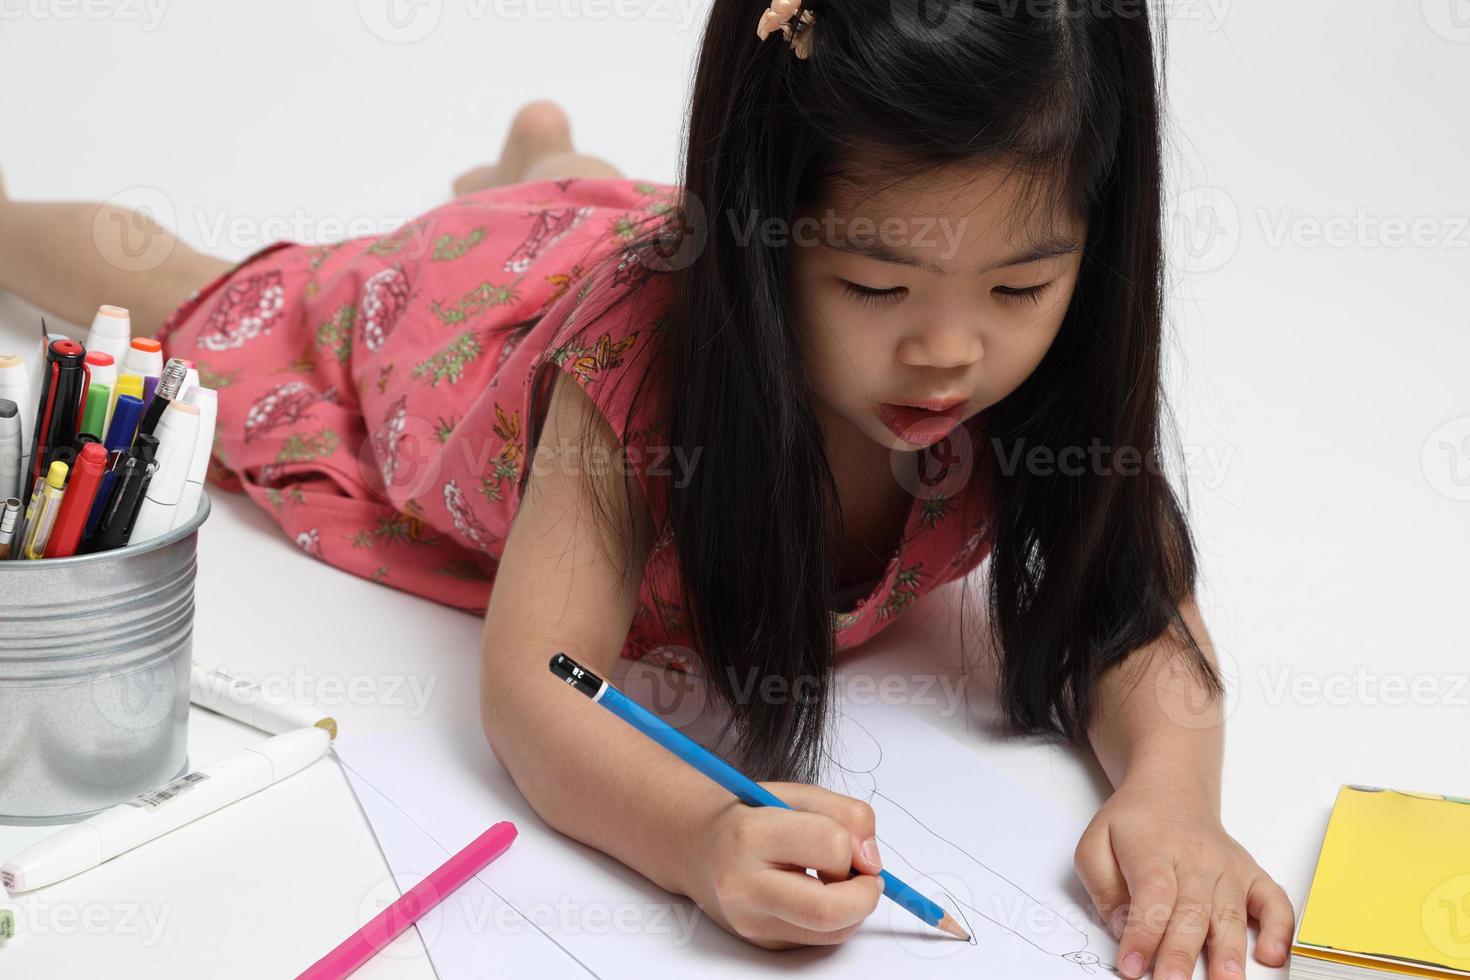 süßes asiatisches Kind foto